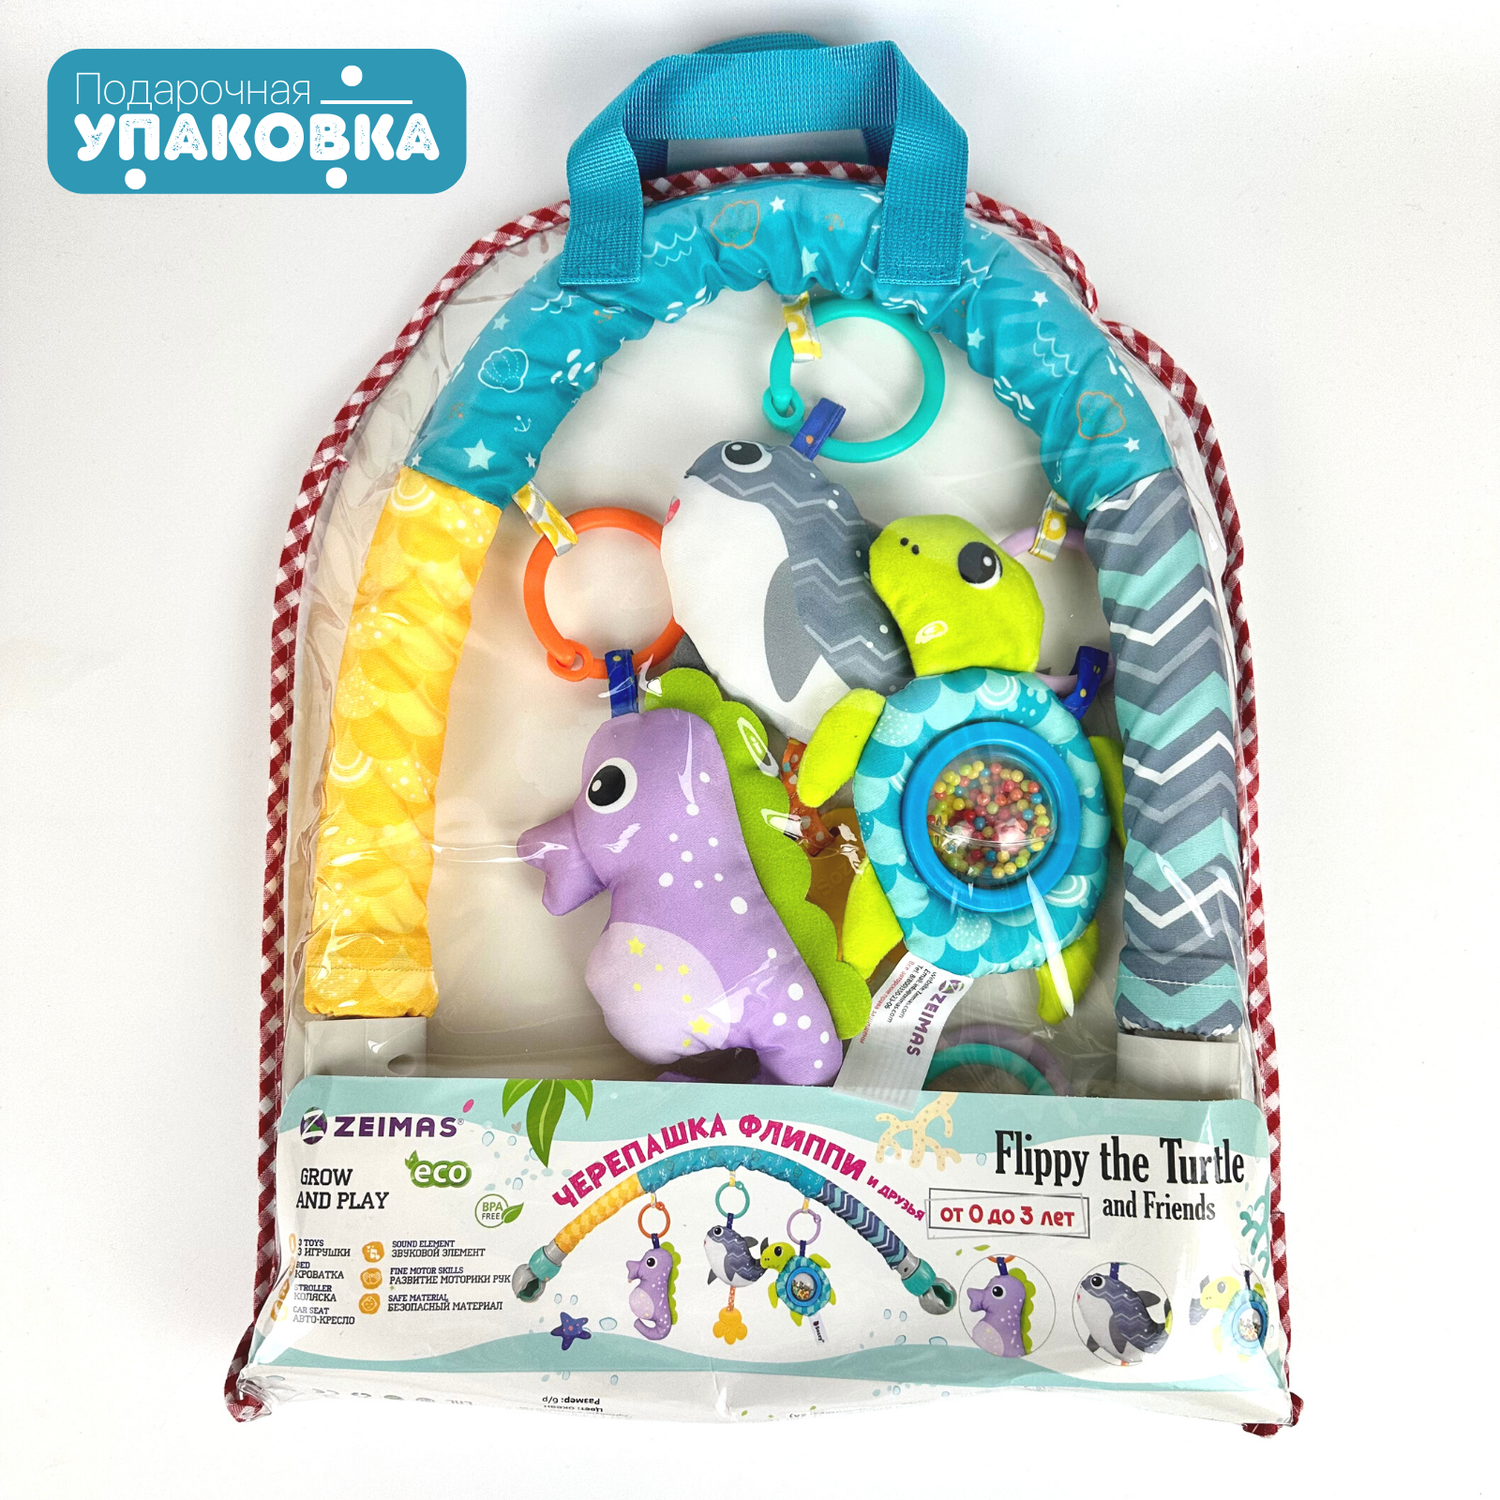 Дуга игровая с игрушками Zeimas Морской мир музыкальная развивающая подвеска на коляску и кроватку - фото 8